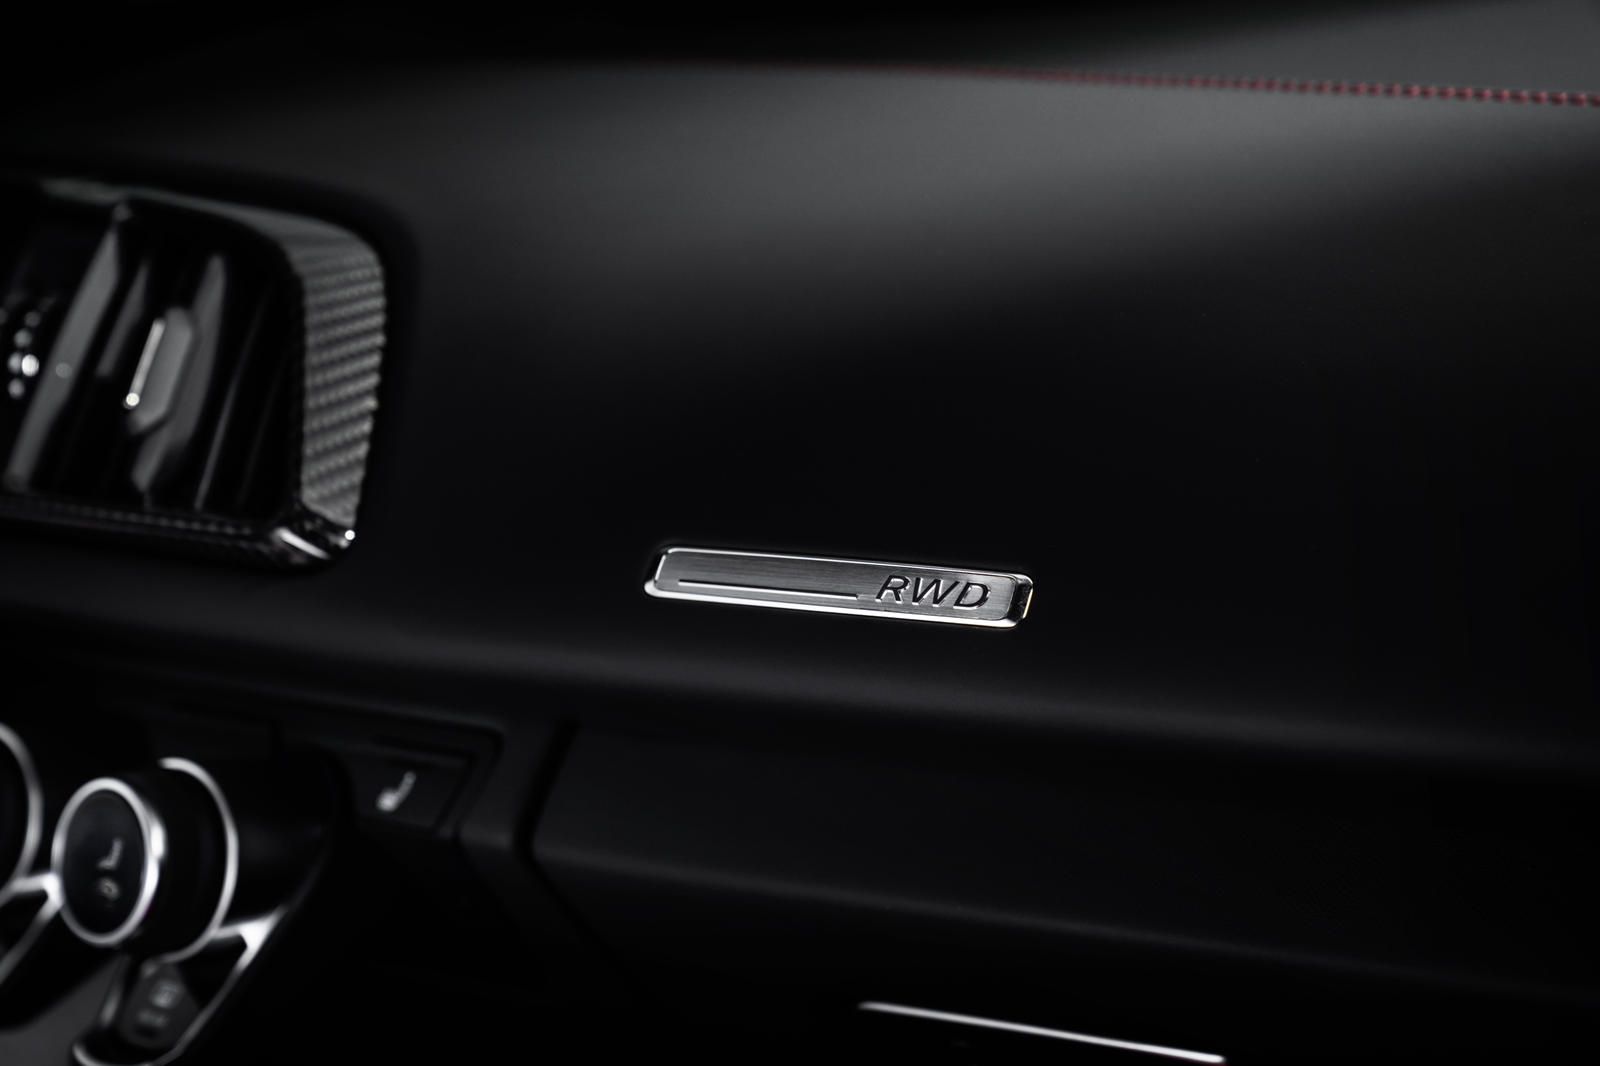 Эта мощность передается исключительно на задние колеса через семиступенчатую коробку передач с двойным сцеплением, что приводит к разгону до 100 км/ч за 3,6 секунды на пути к максимальной скорости 320 км/ч. Audi заявляет, что внес изменения в шасси R